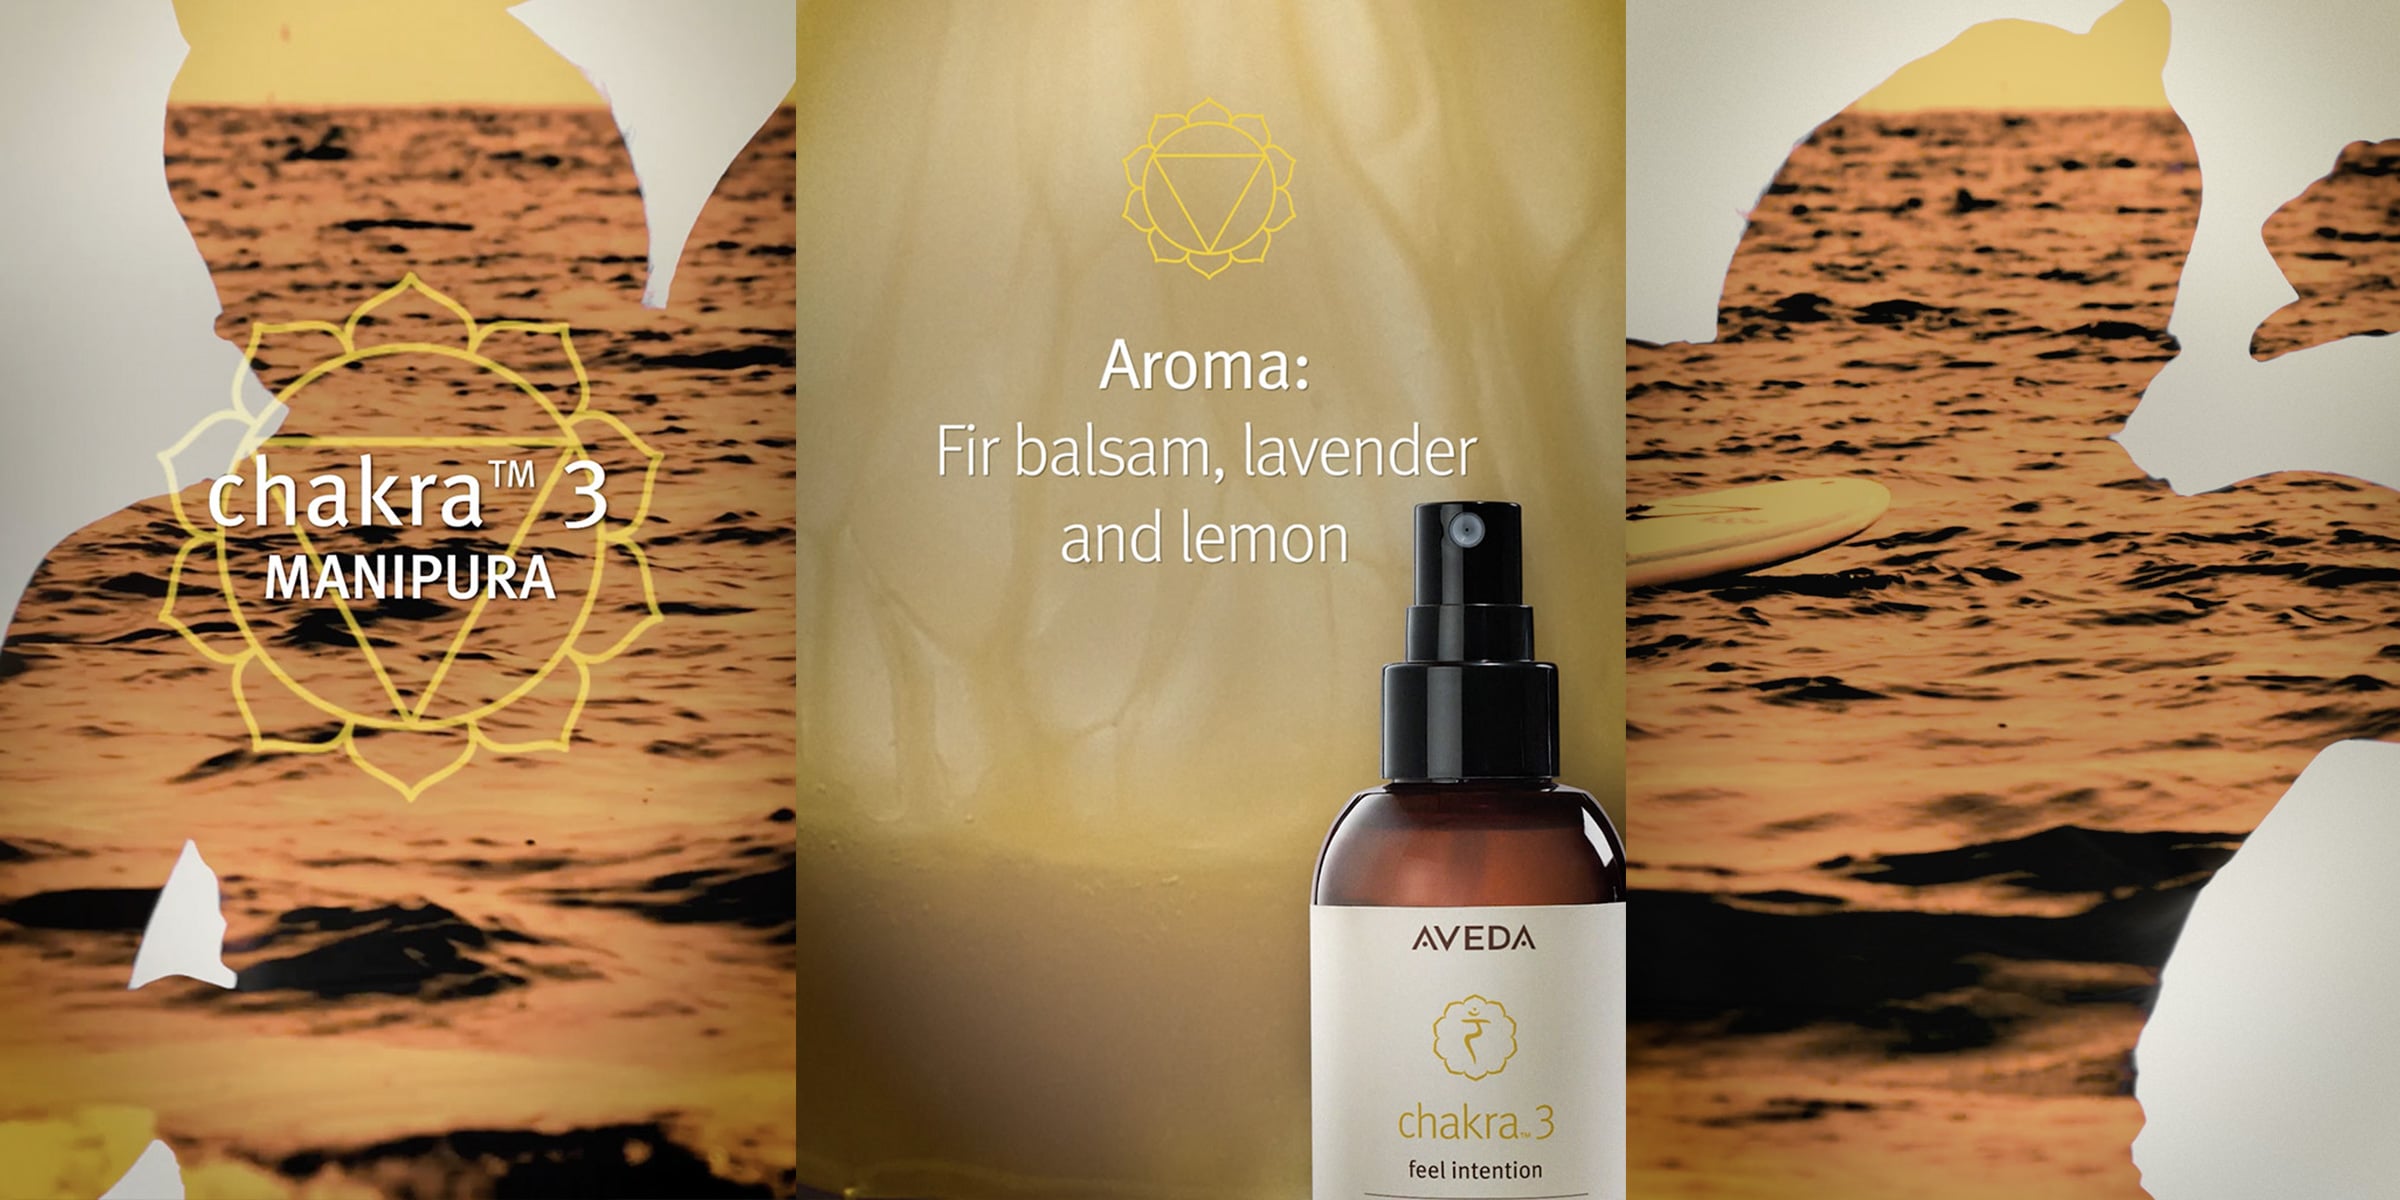 Das Aroma von Chakra 3 umfasst Tannenbalsam, Lavendel und Zitrone